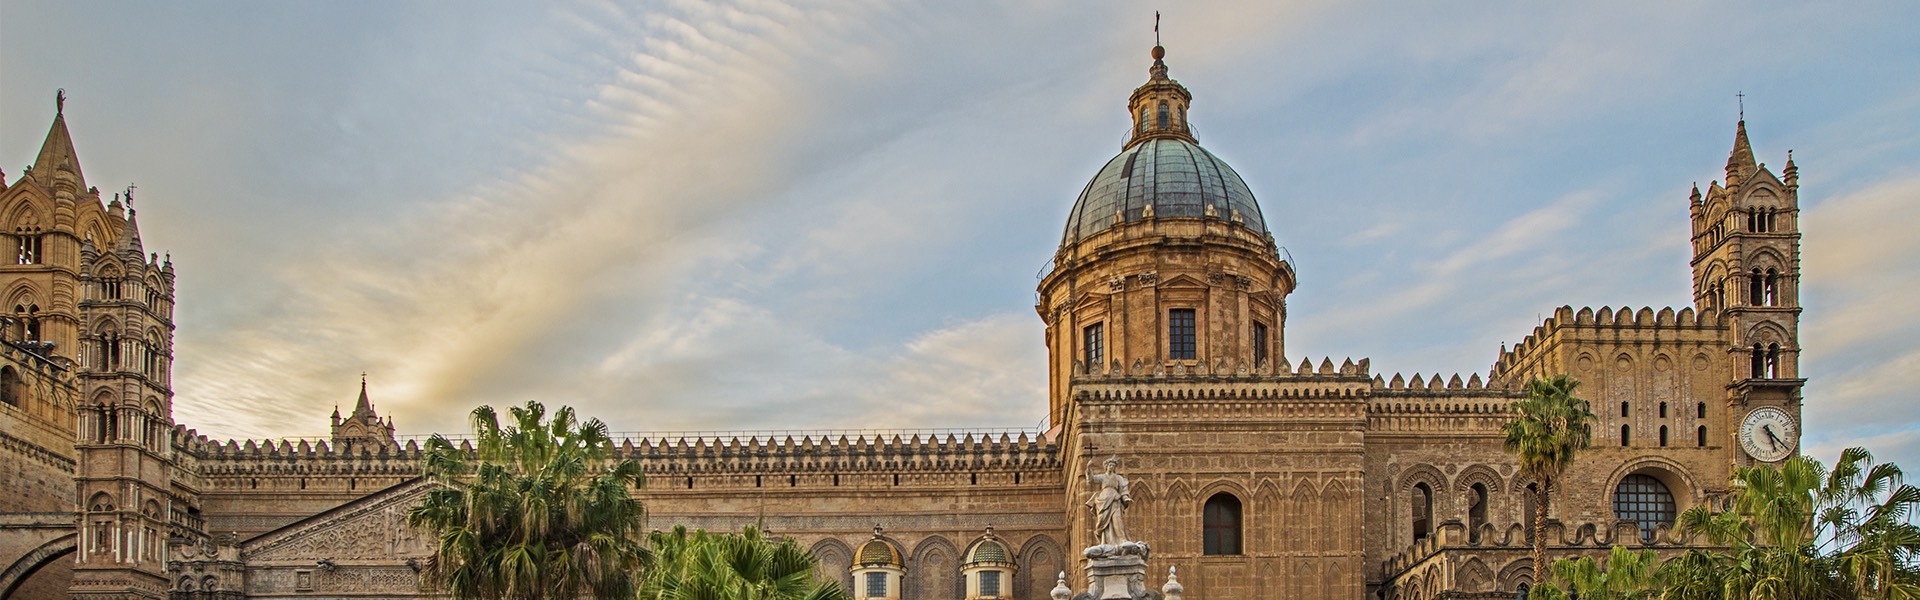 Palermo Arabo Normanna e le cattedrali di Cefalù e Monreale 3